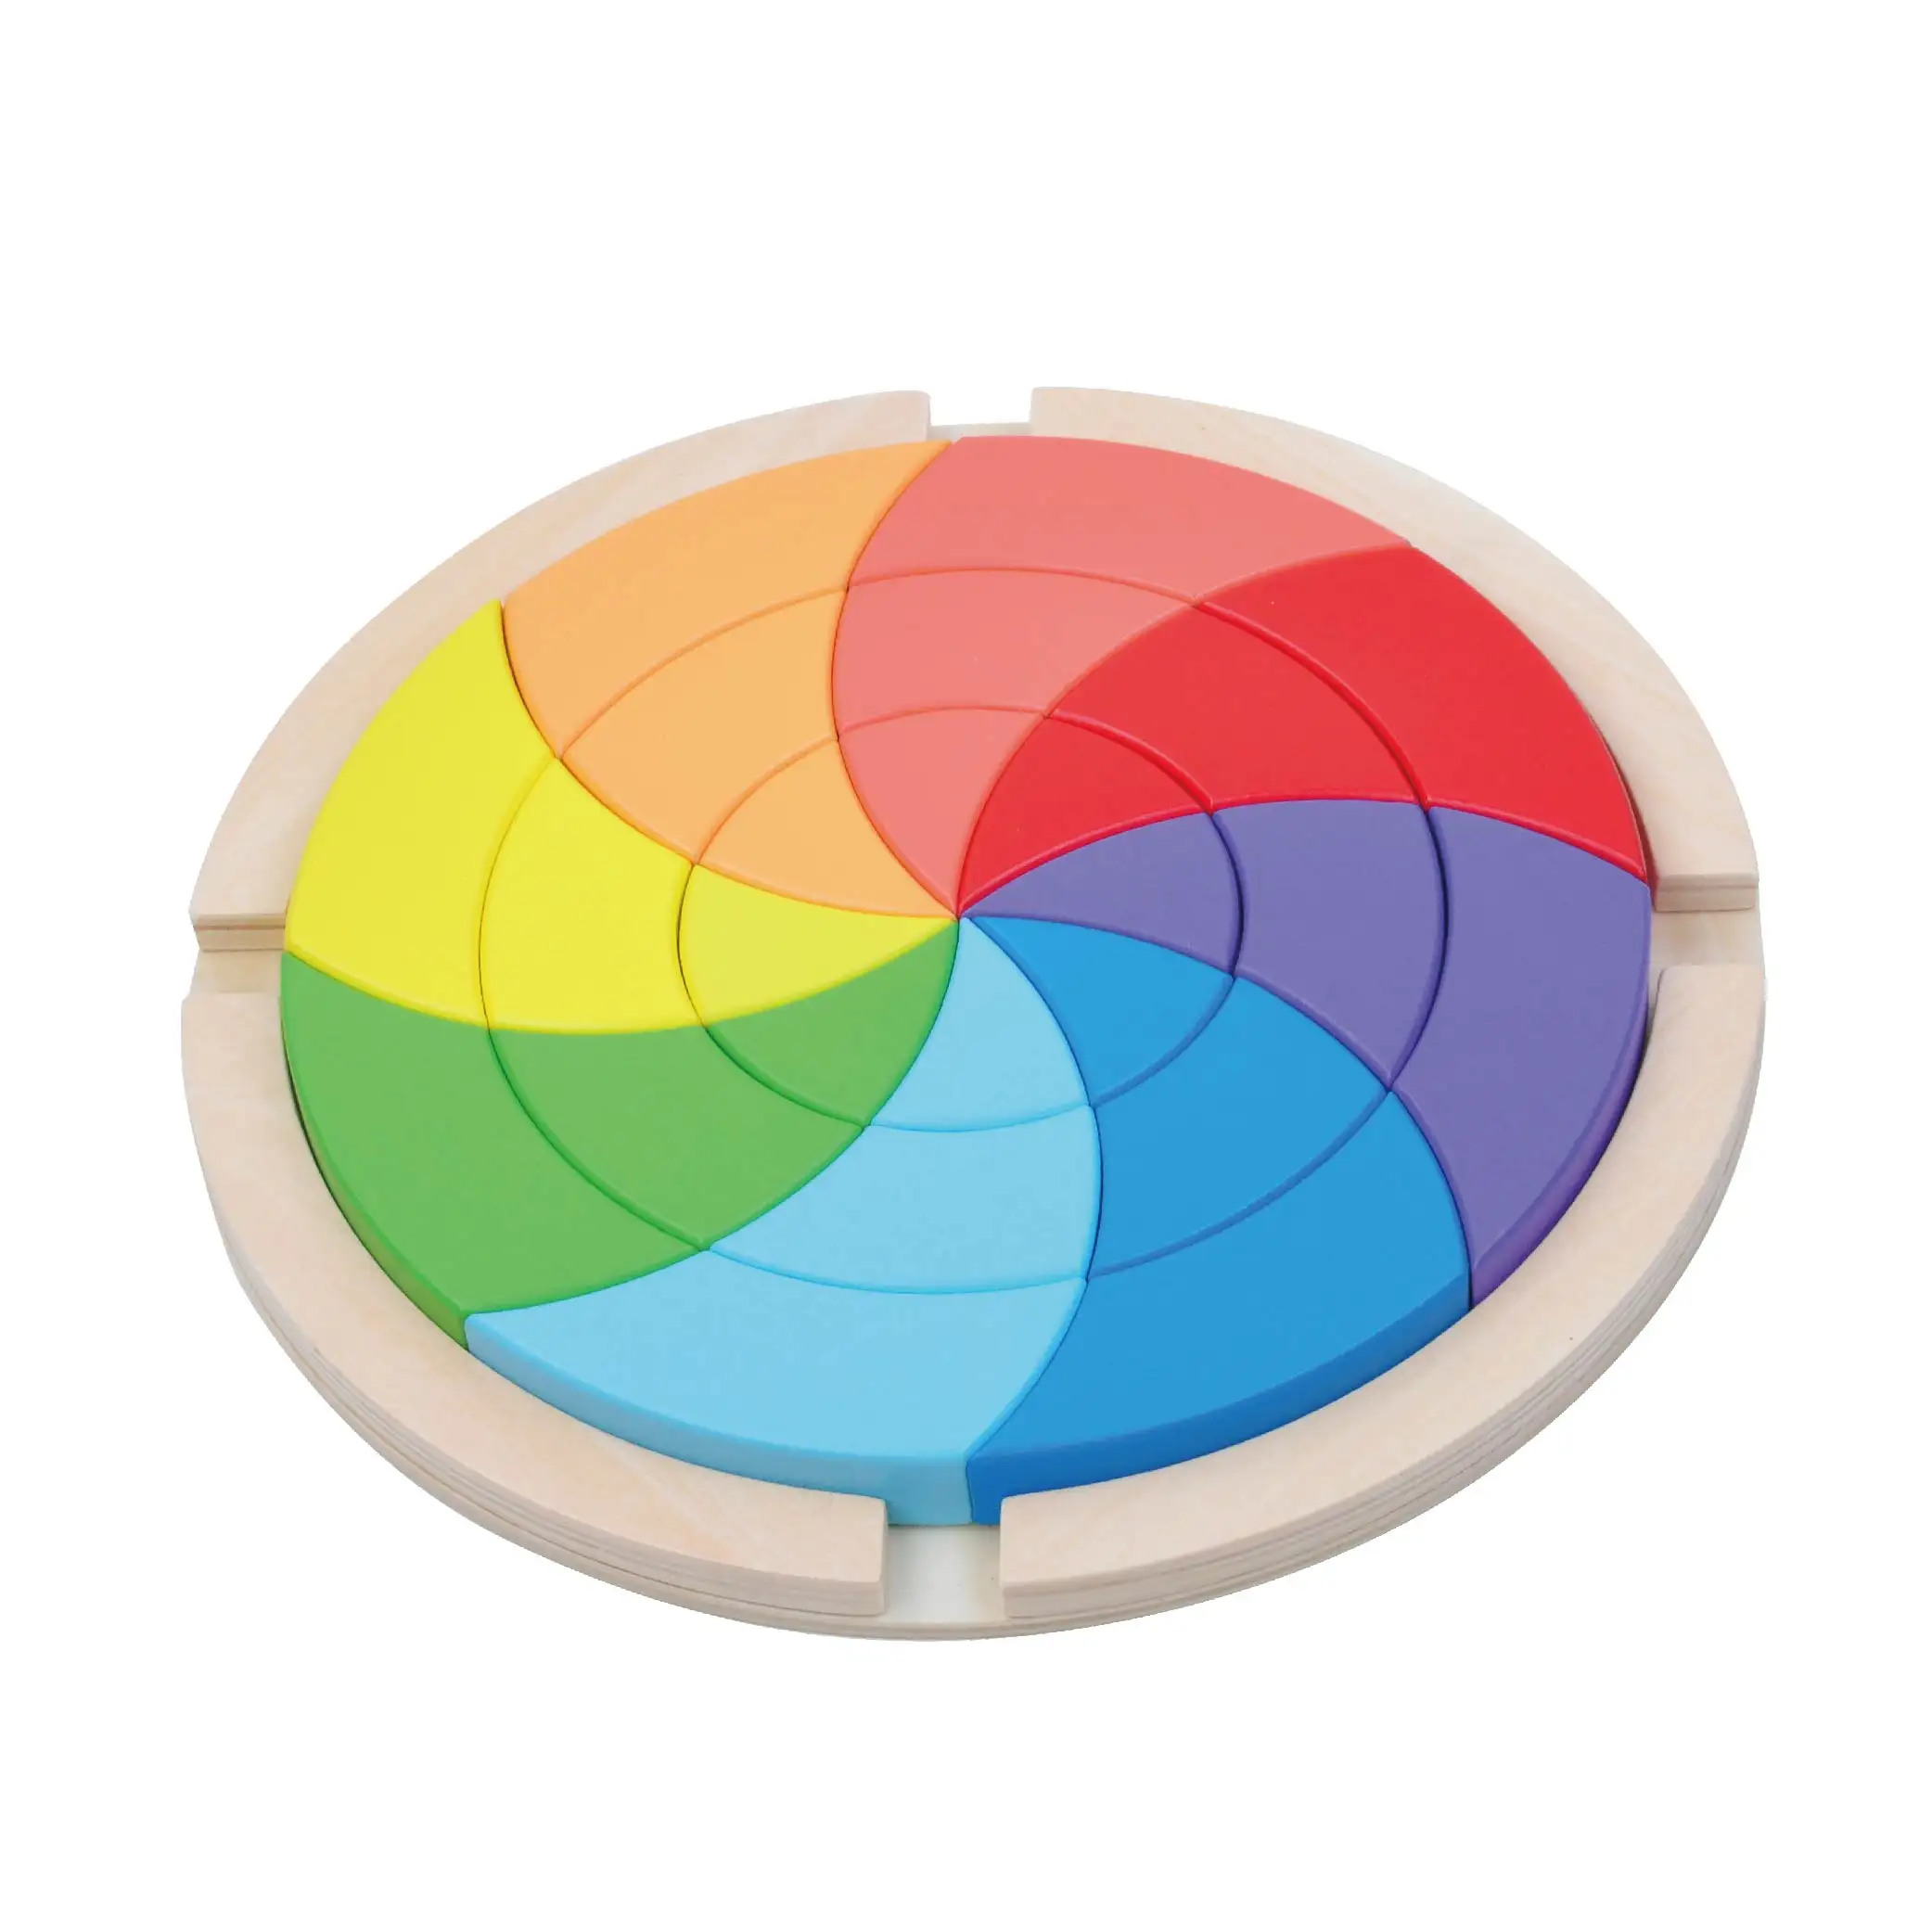 All'ingrosso di alta qualità puzzle magico 3d palla velocità cubo palla puzzle arcobaleno per i bambini